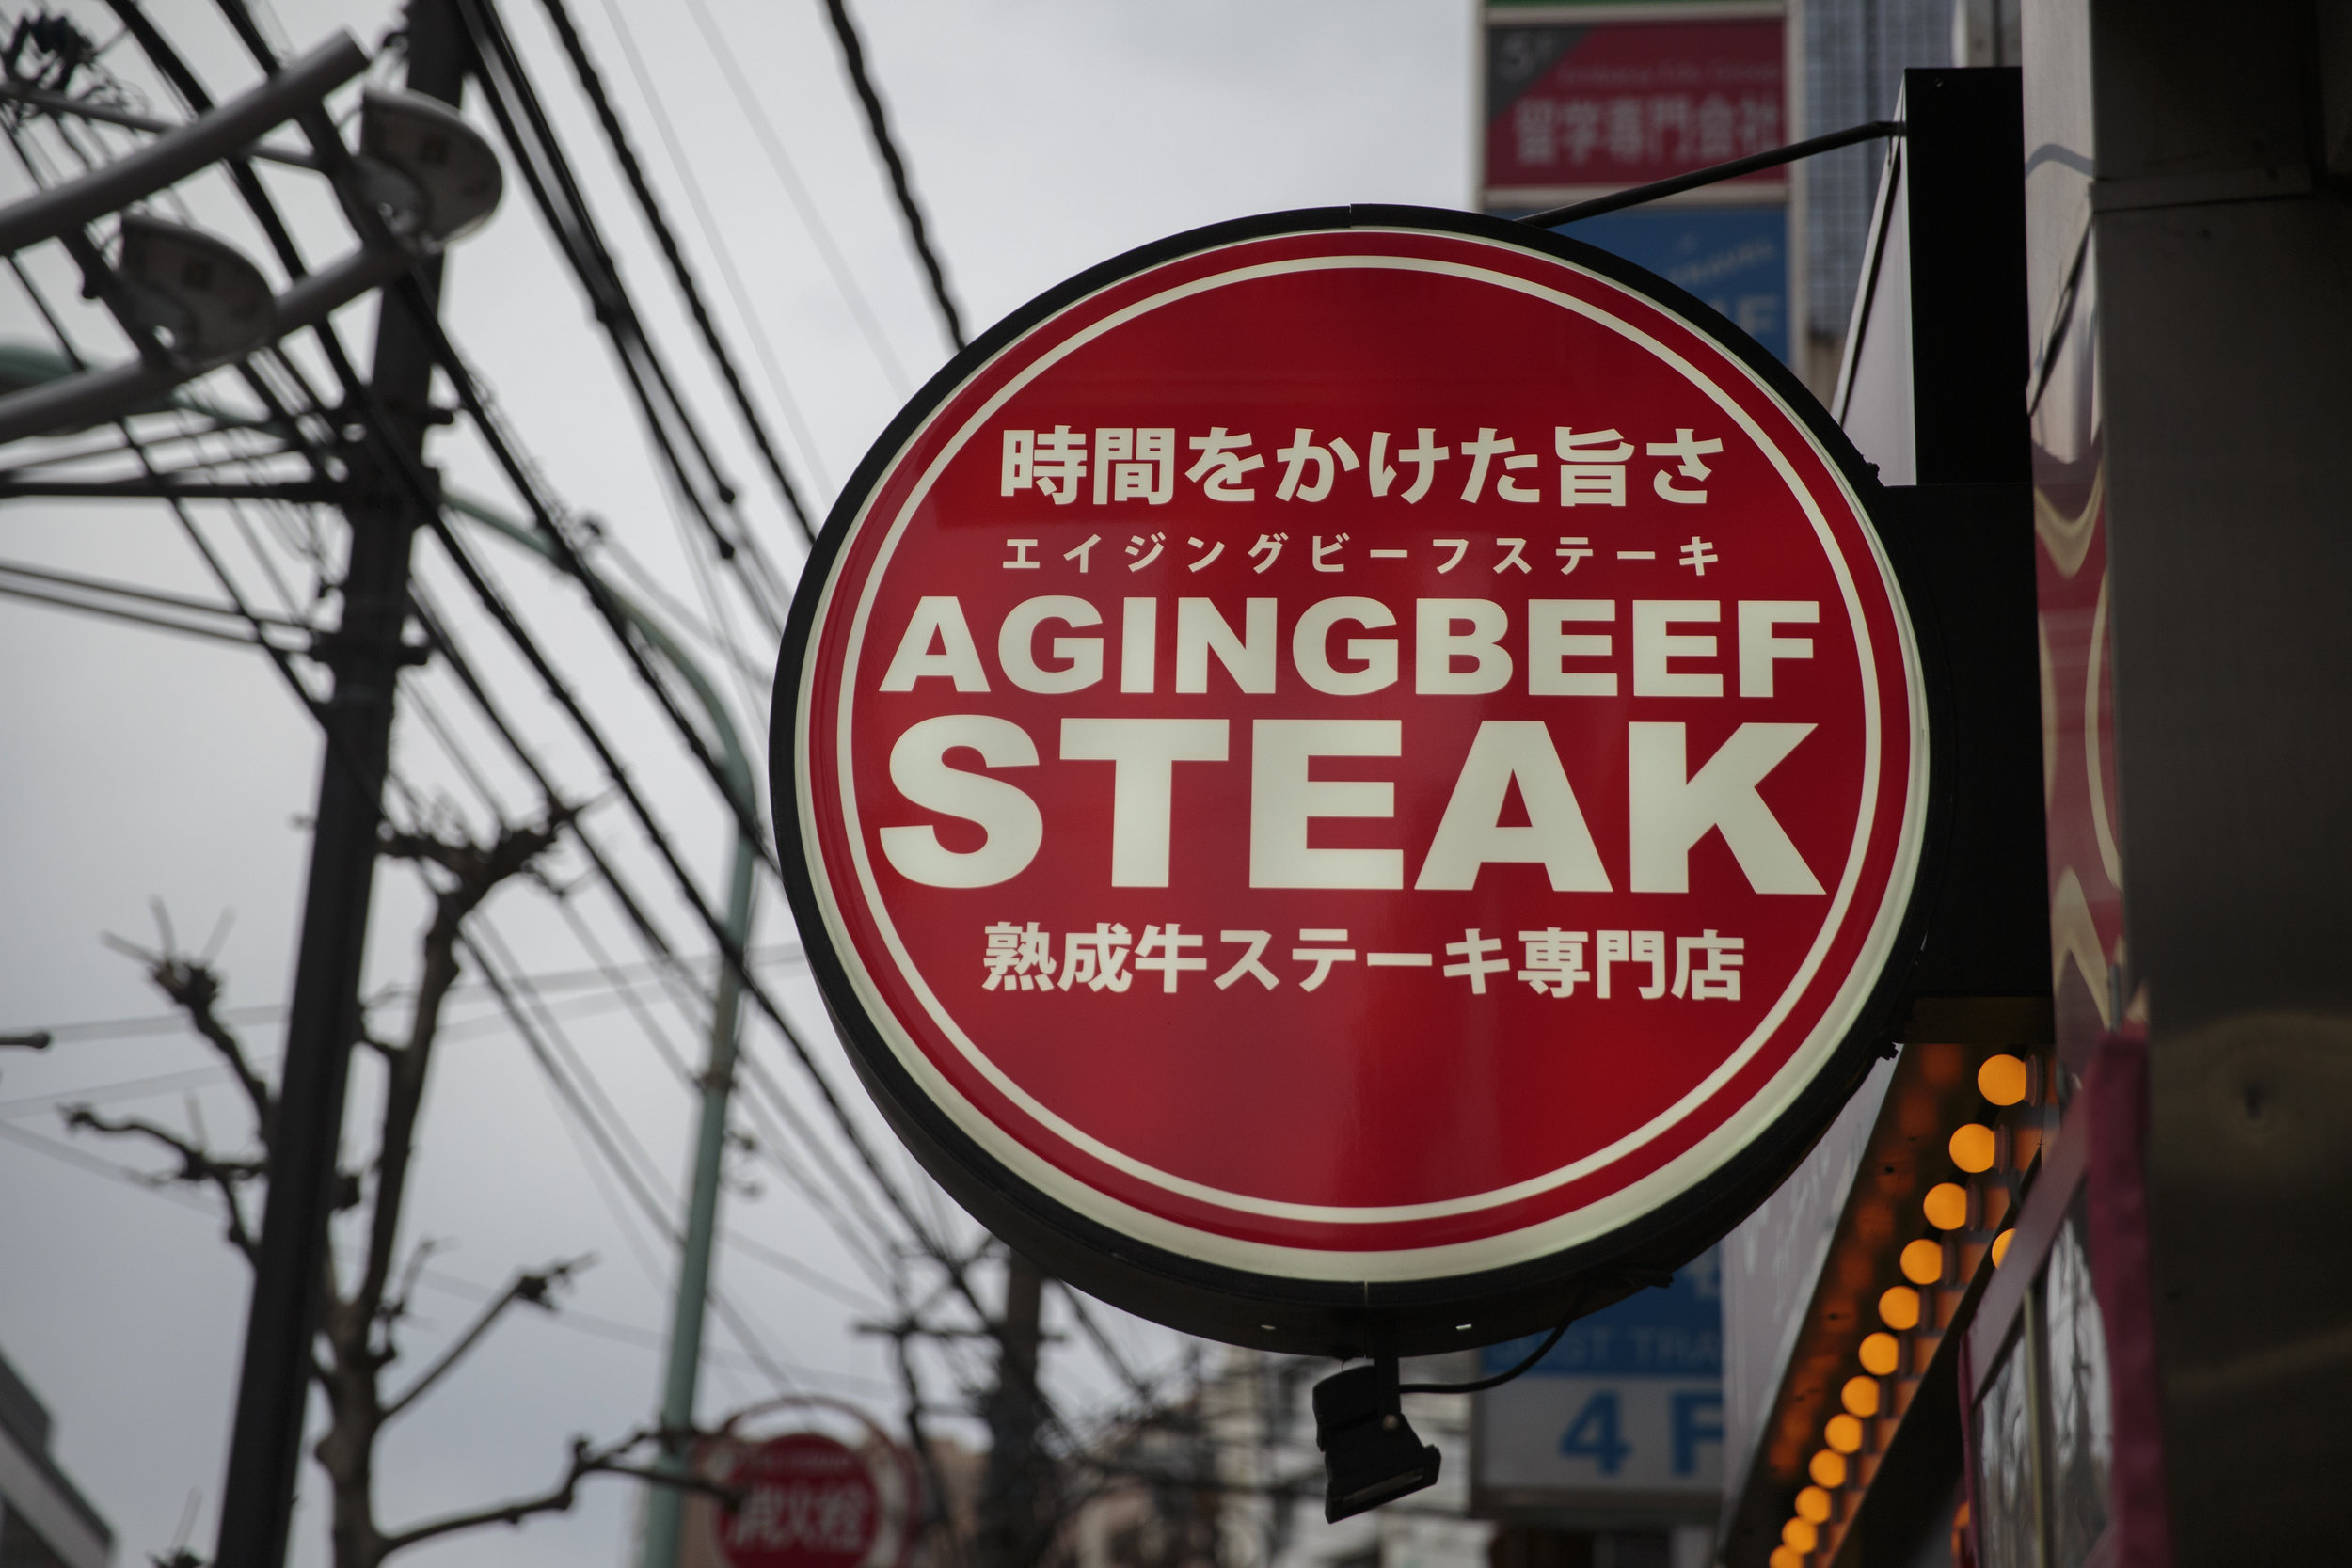 steak-sign.jpg